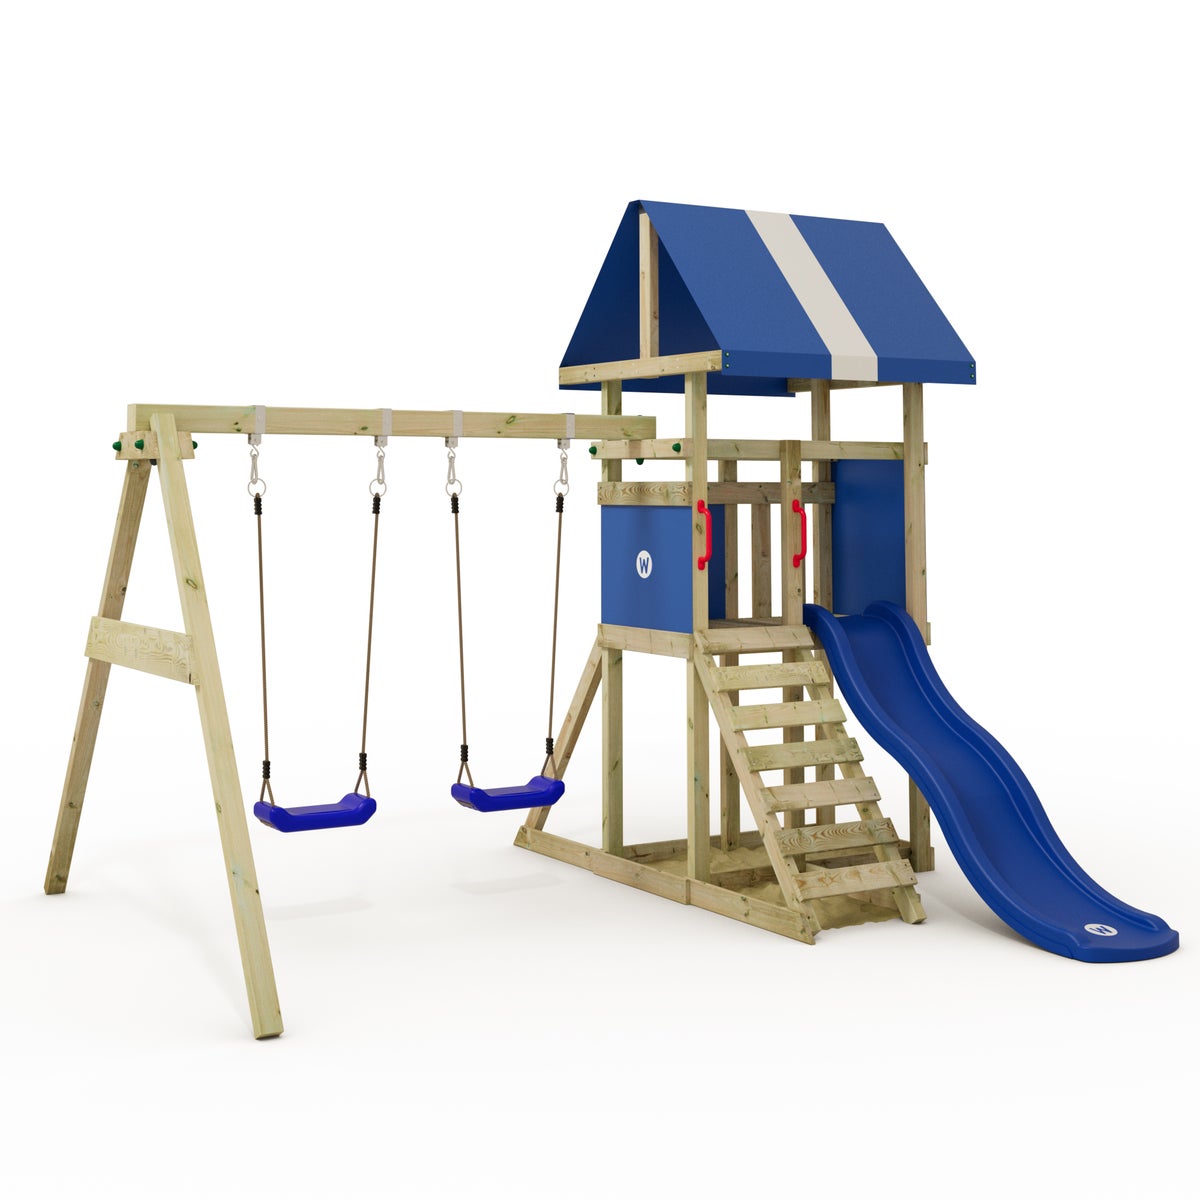 WICKEY Spielturm Klettergerüst DinkyHouse mit Schaukel und Rutsche, Kletterturm mit Sandkasten, Leiter und Spiel-Zubehör - blau